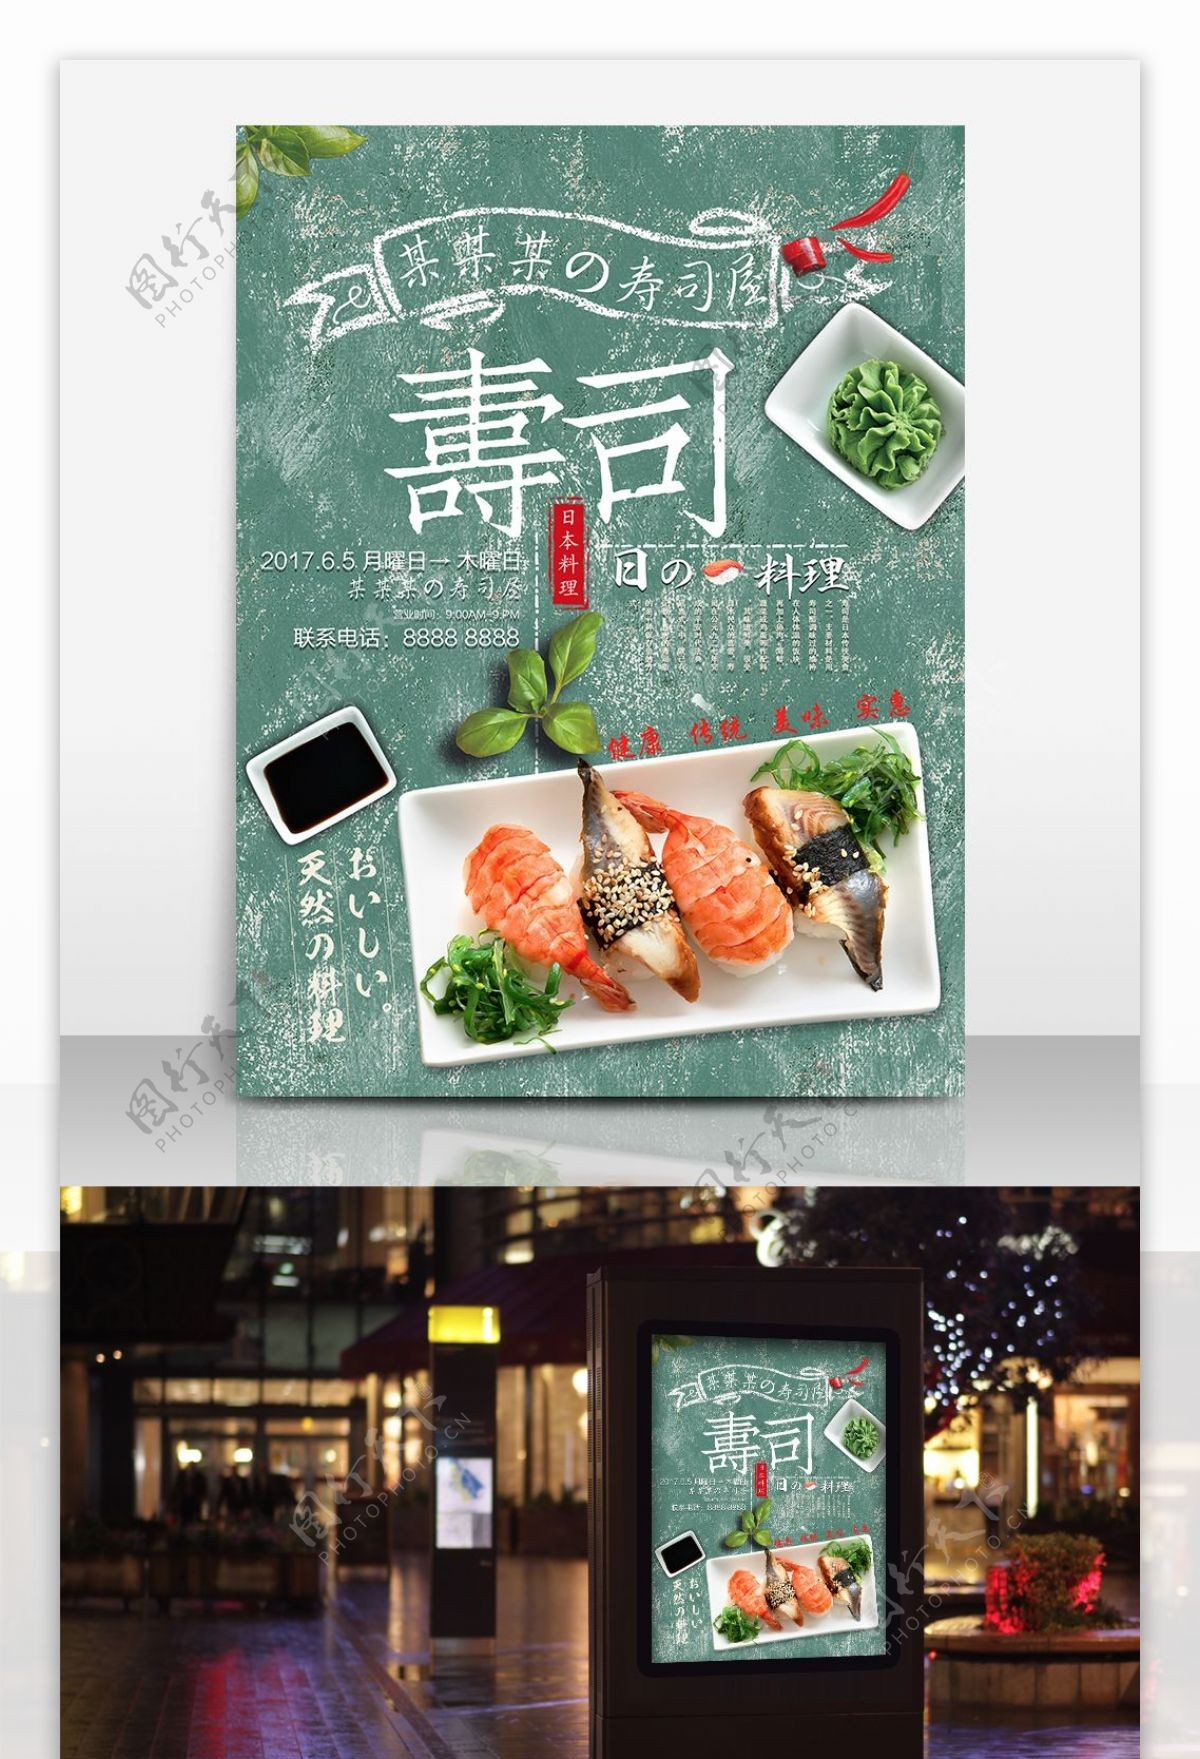 原创美味美食餐厅餐馆促销菜单日本寿司